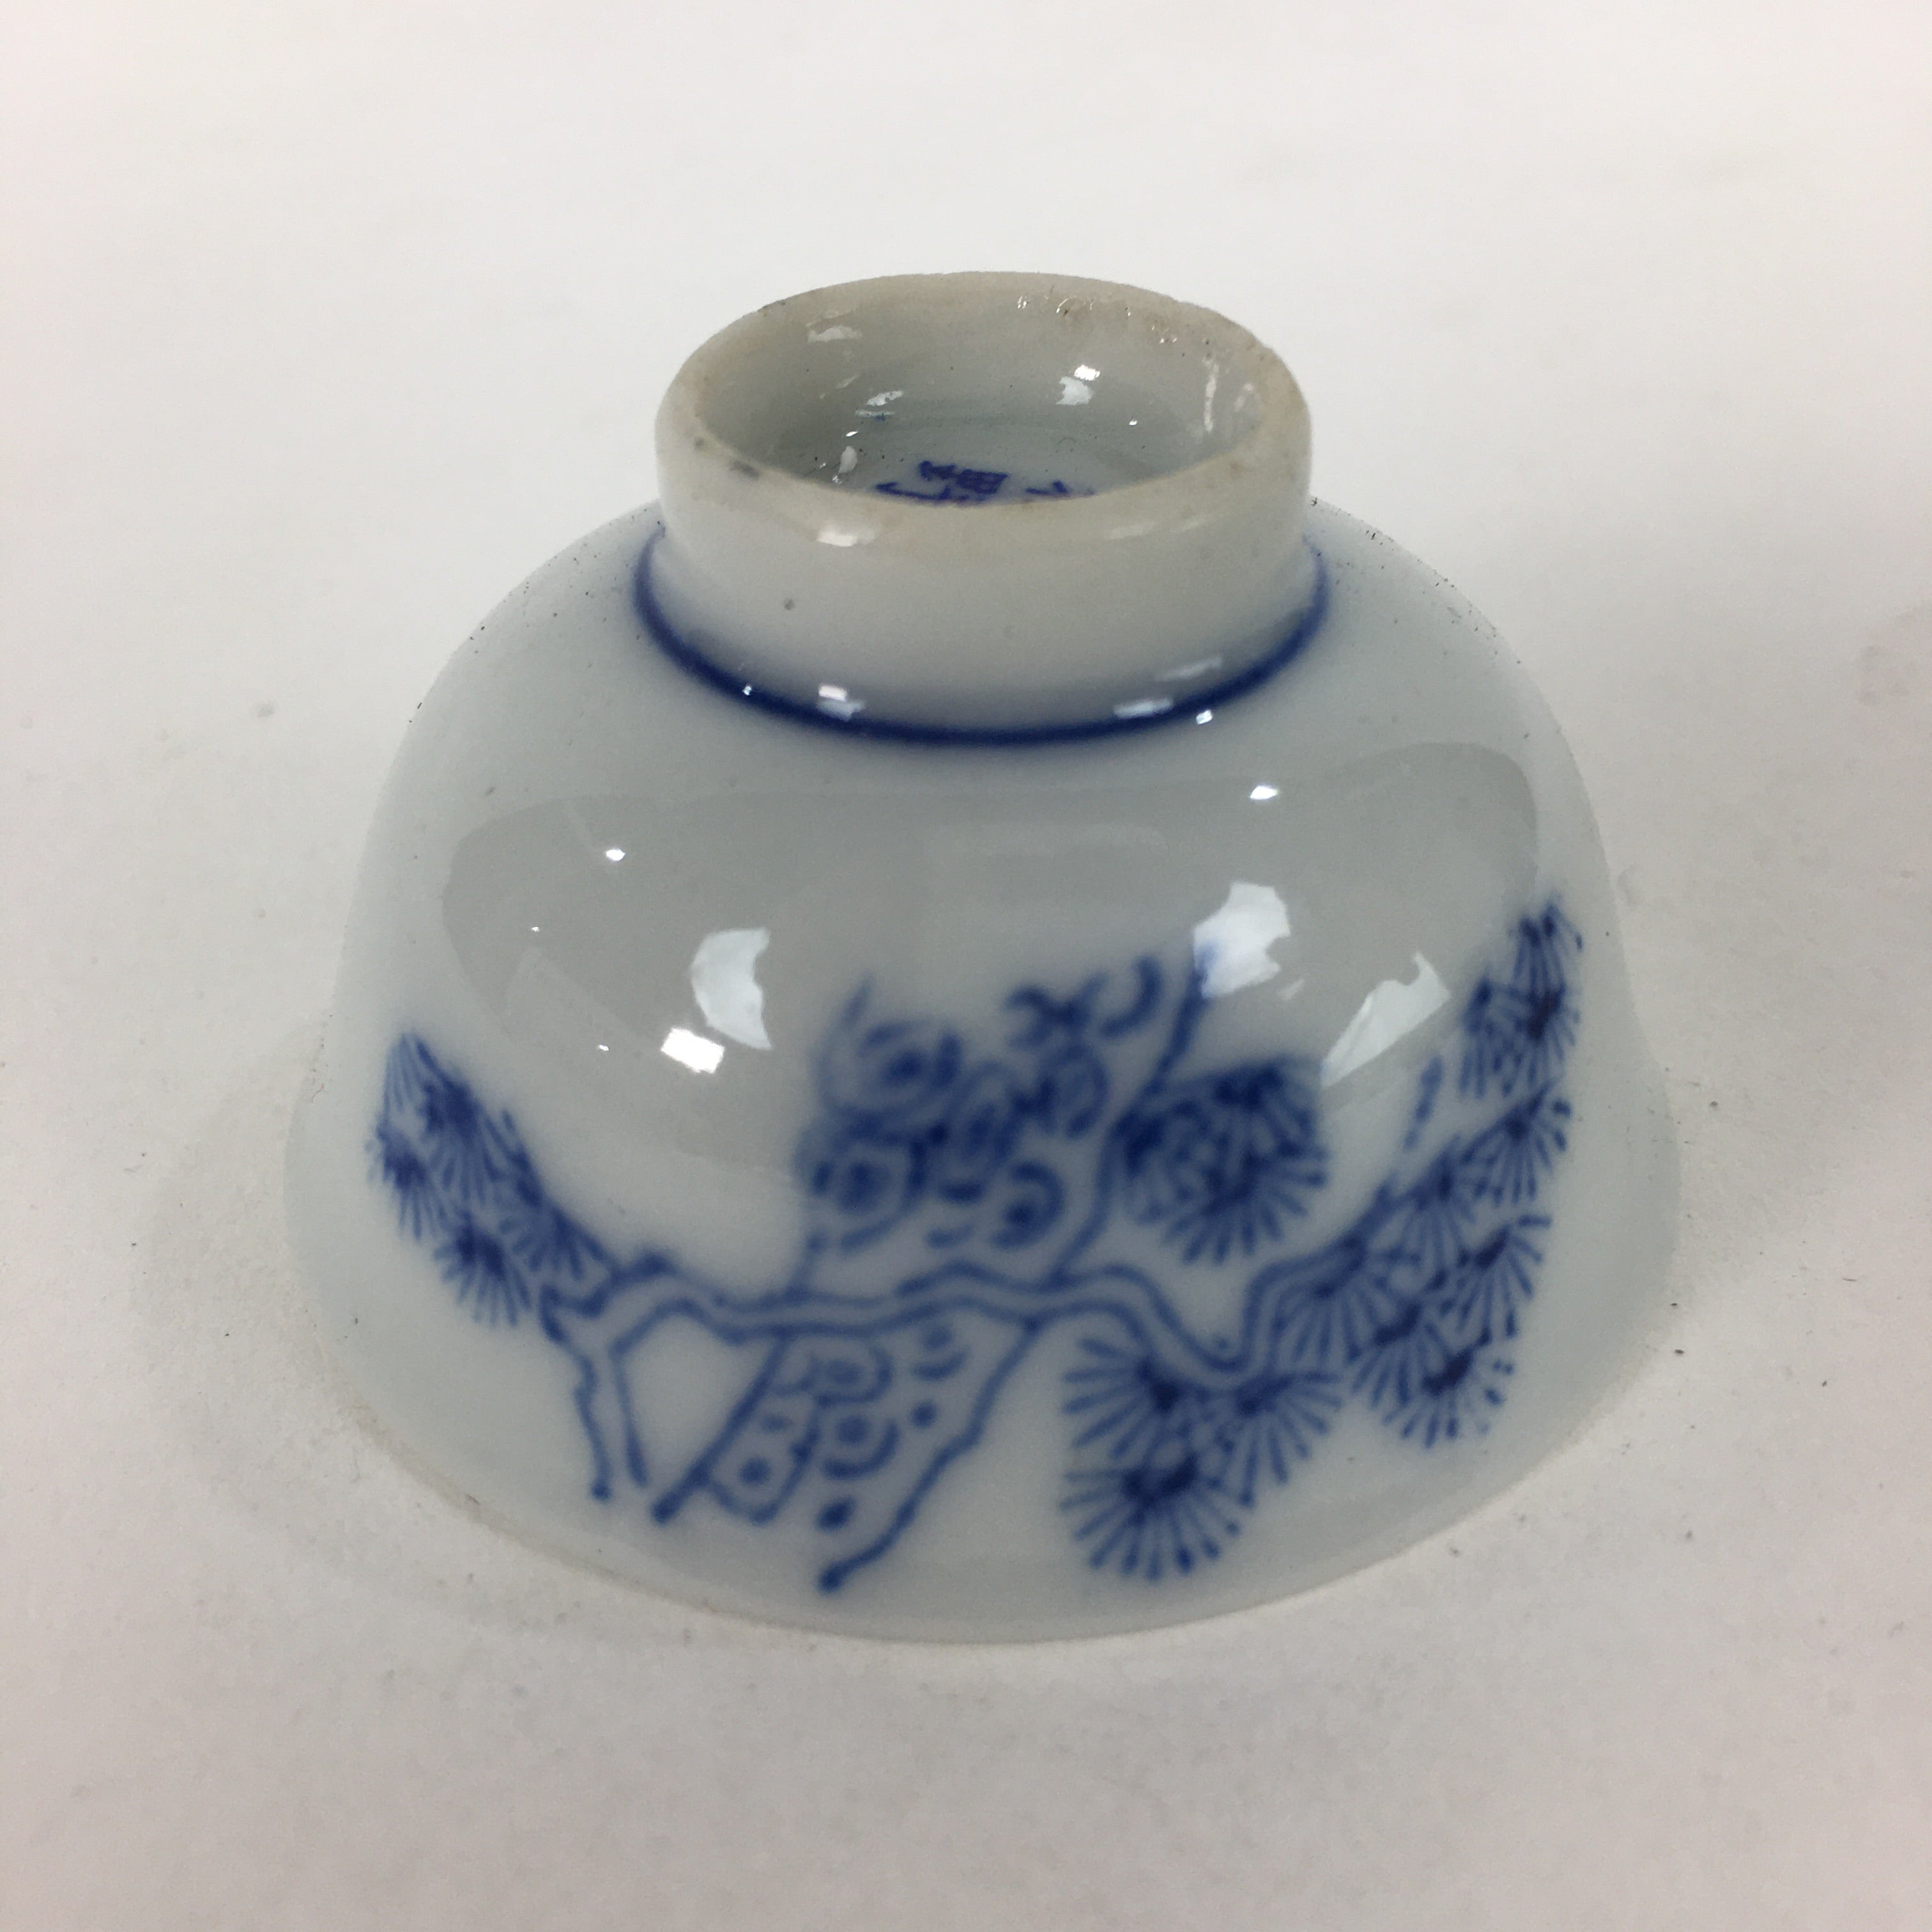 Japanese Porcelain Sake Cup Vtg Blue Pine Tree Design Guinomi Ochoko G24